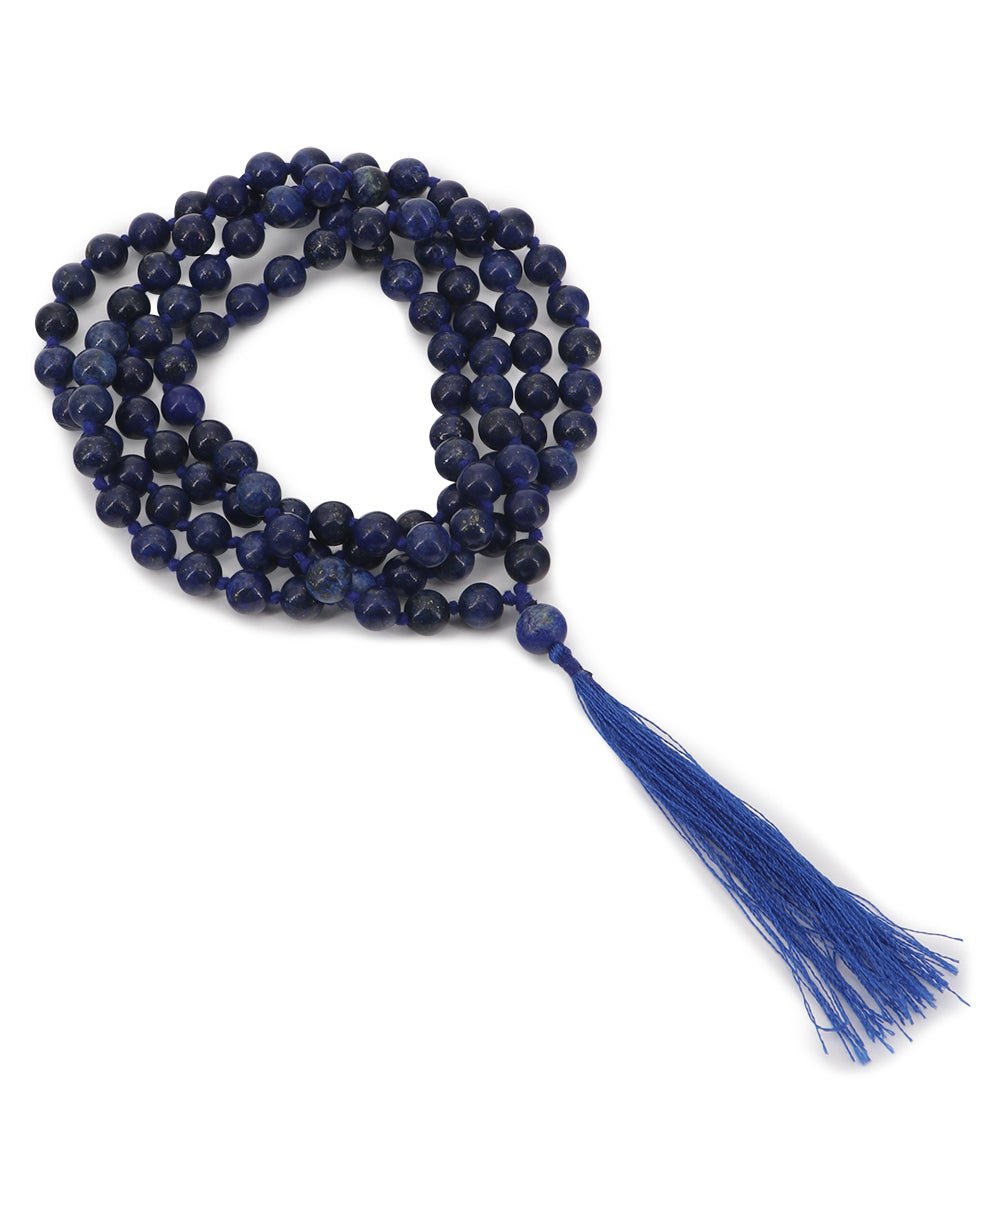 108 Beads Lapis Meditation Mala, Knotted by Buddha Groove - Prayer Beads